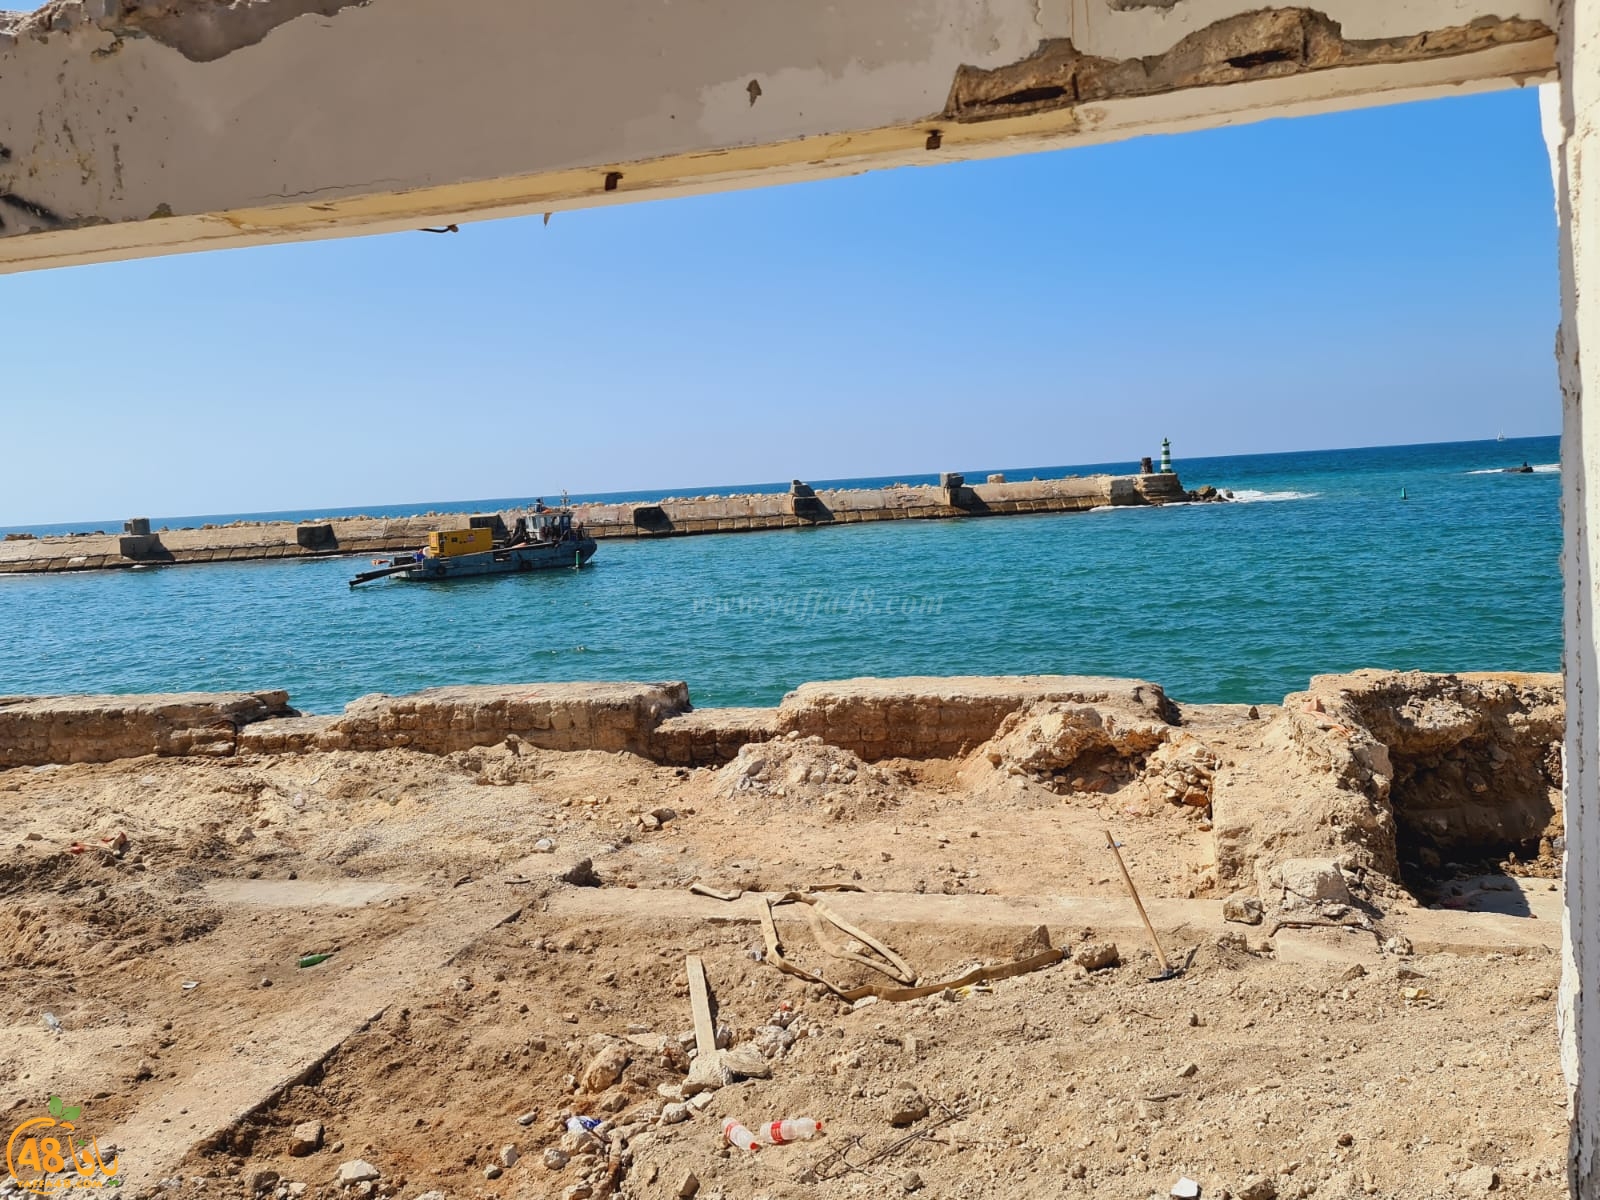  بعد هدم مبنى الجمارك في ميناء يافا - العثور على بقايا أجزاء من سور يافا التاريخي